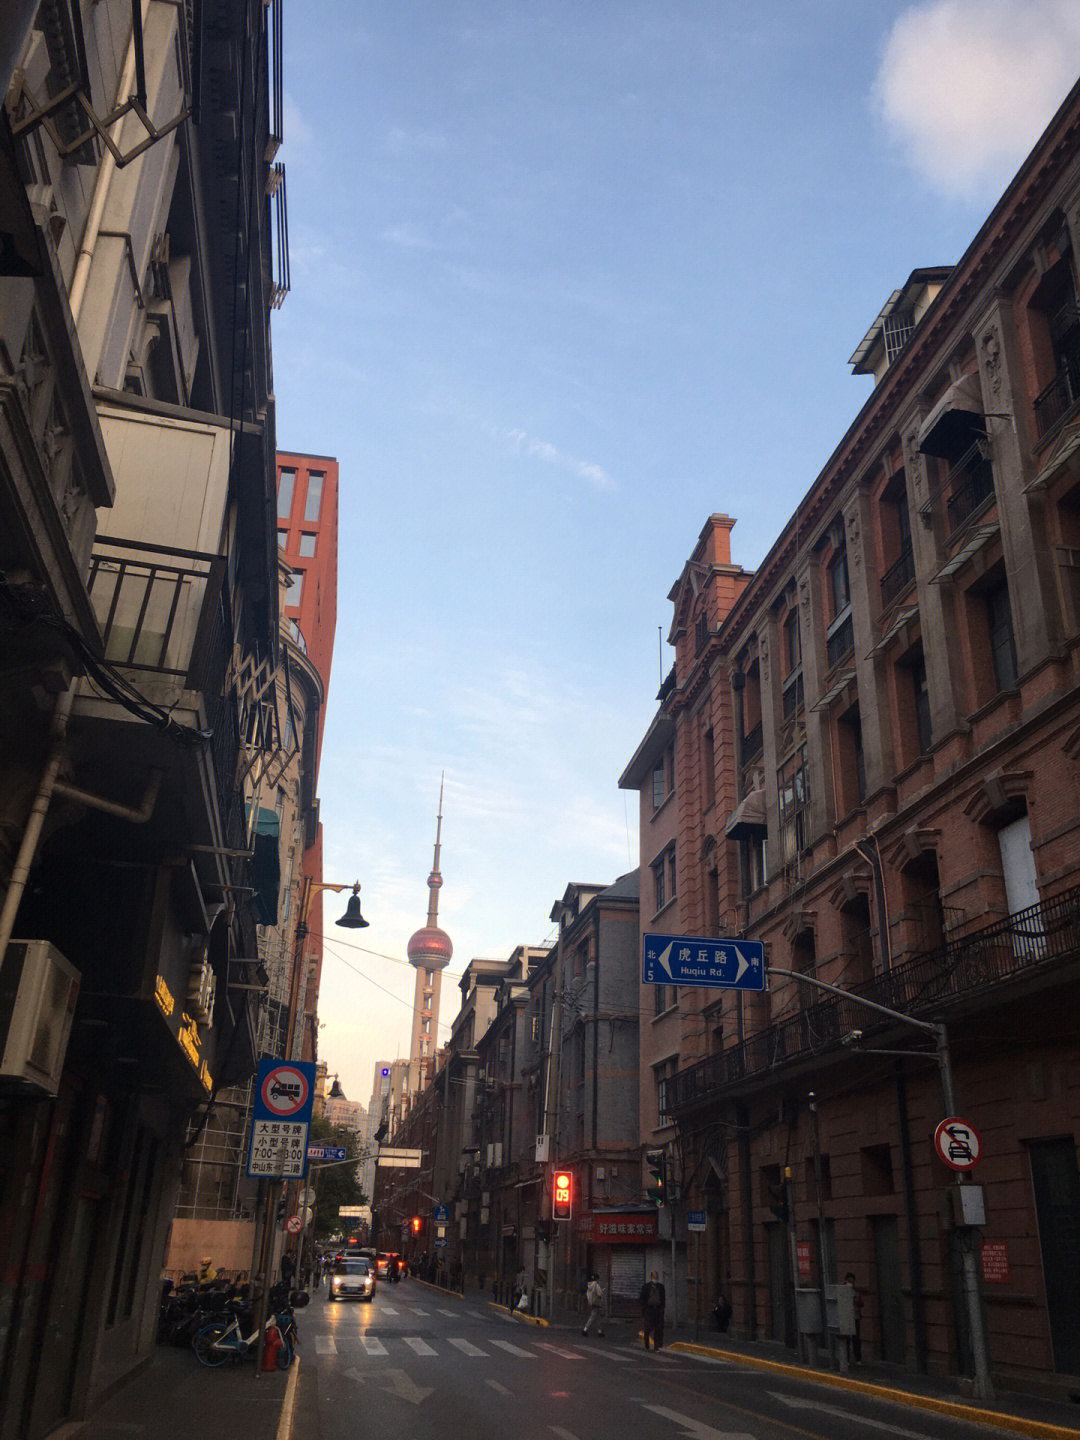 手机随手一拍镜头下的城市街道上海街景没话说值得拍照记录#笔记灵感